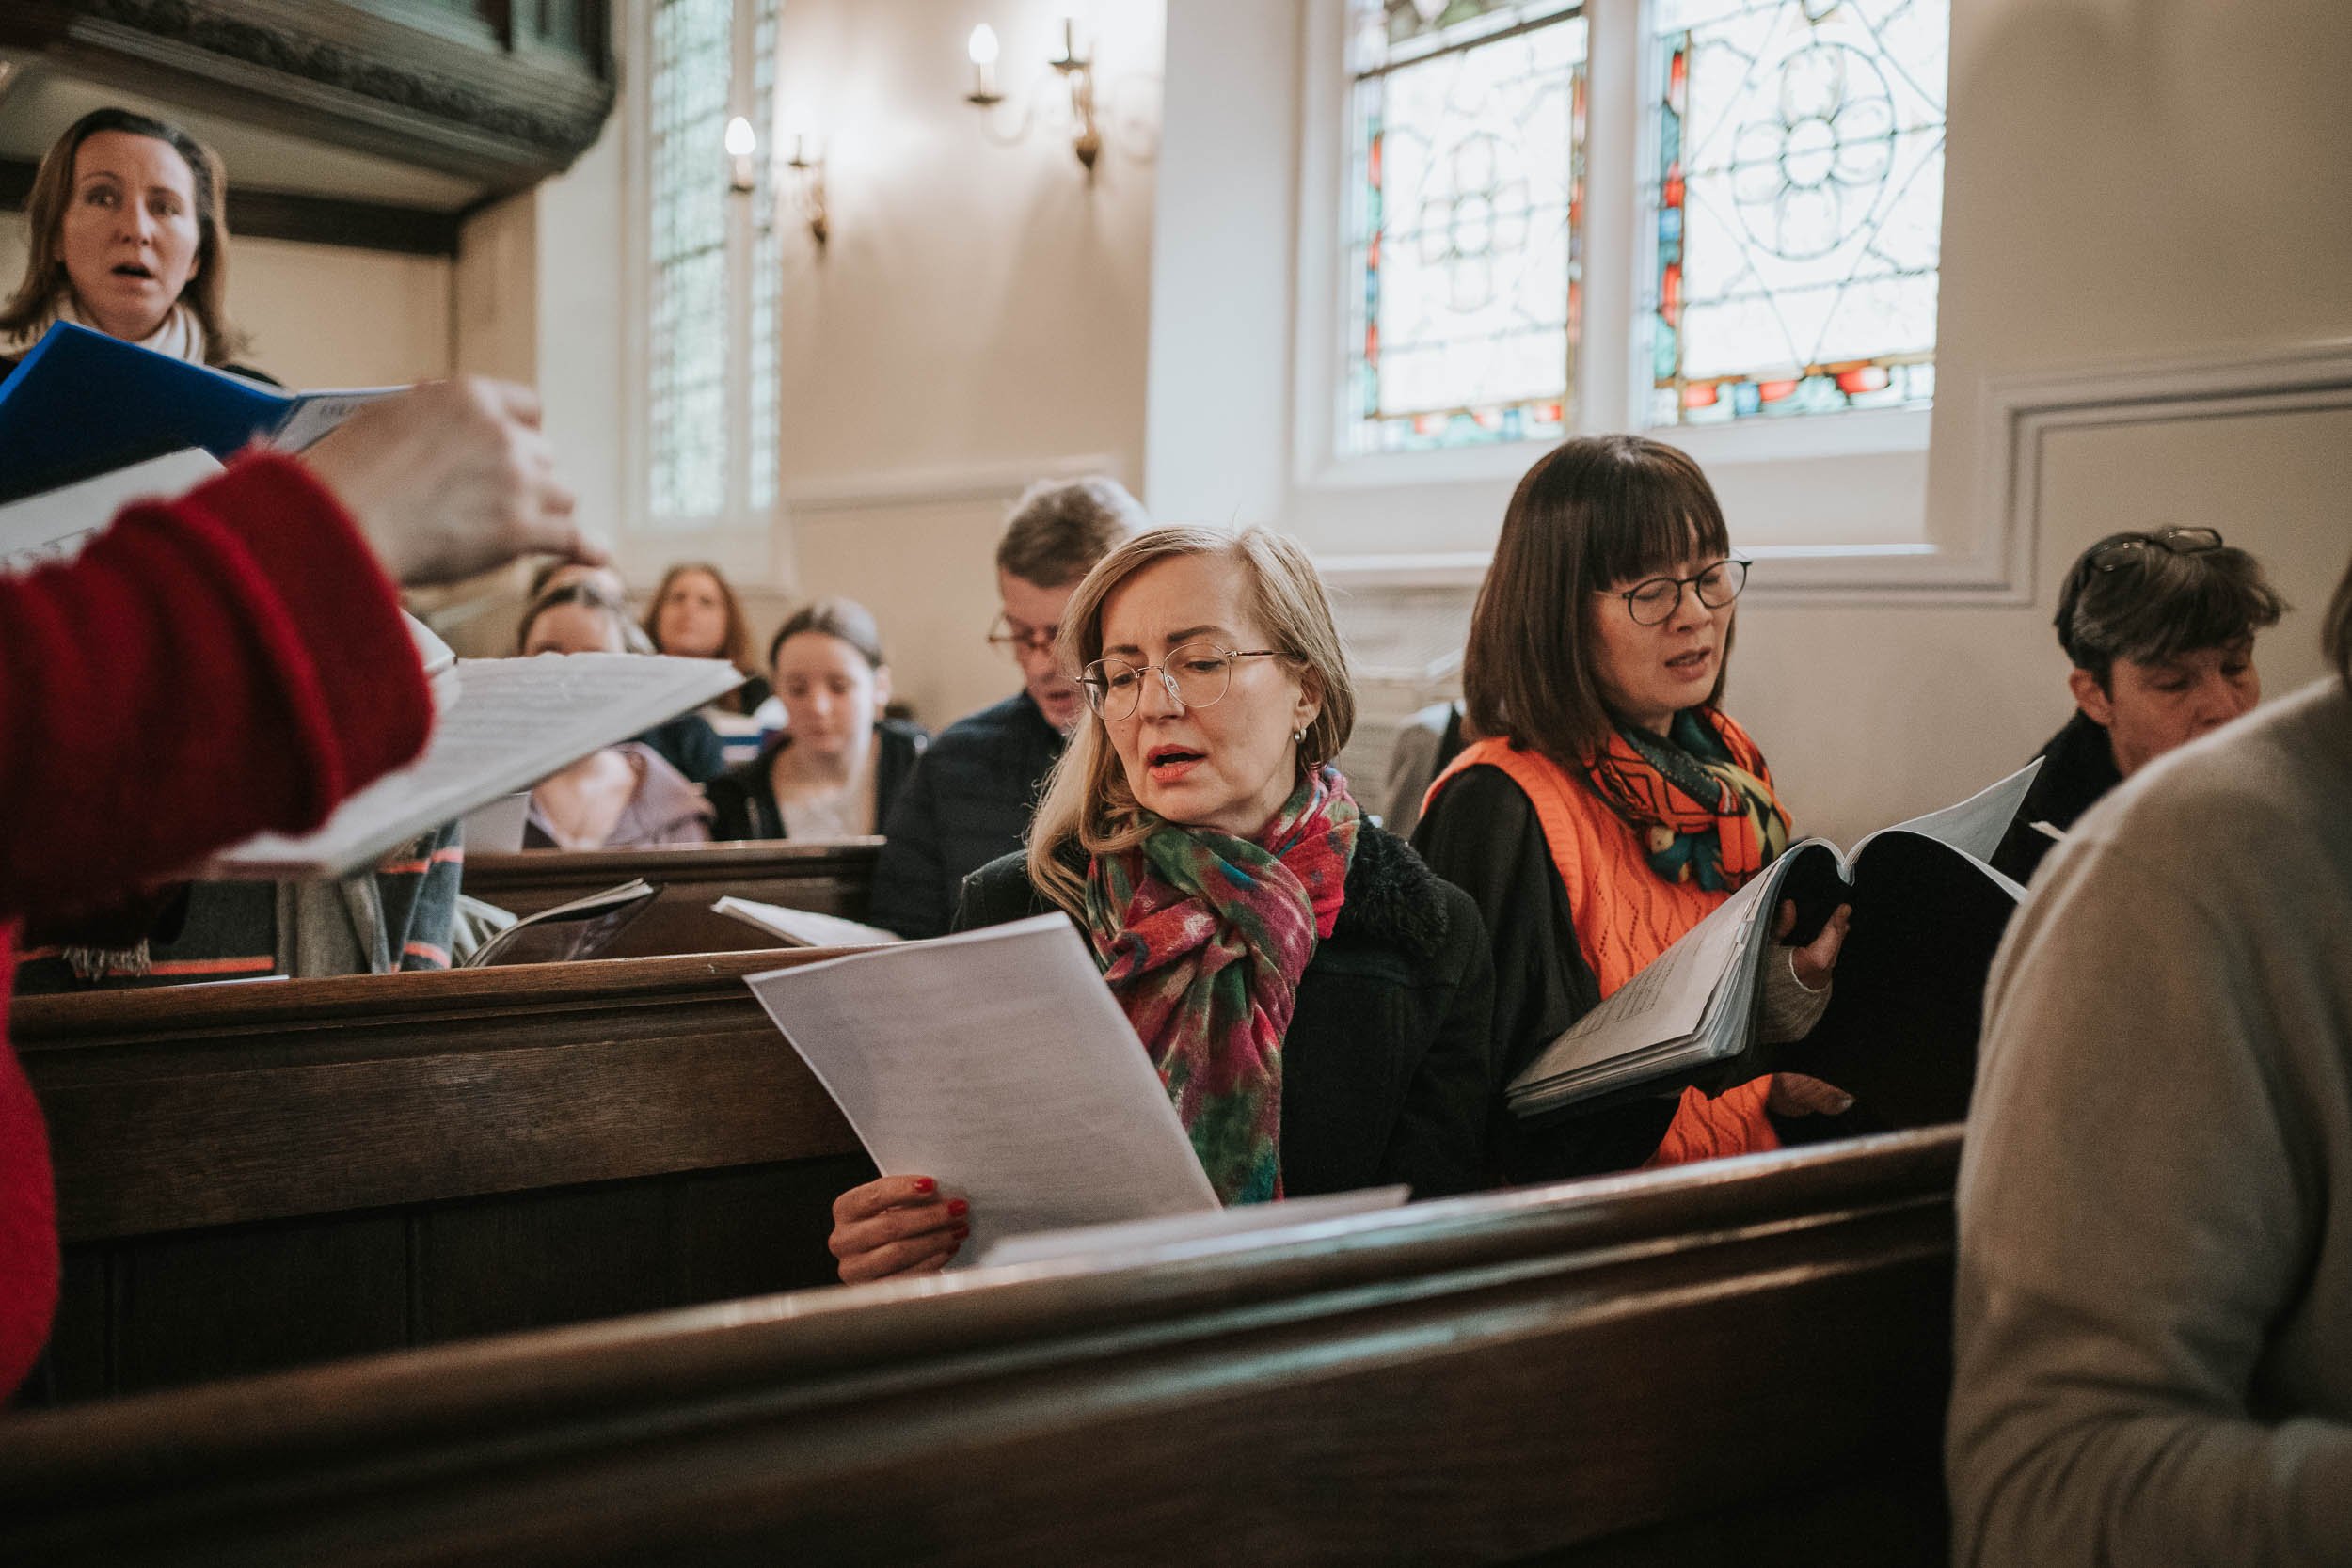  Congegation singing inside the Deutsche Evangelische Christuskirche in Knightsbridge. 